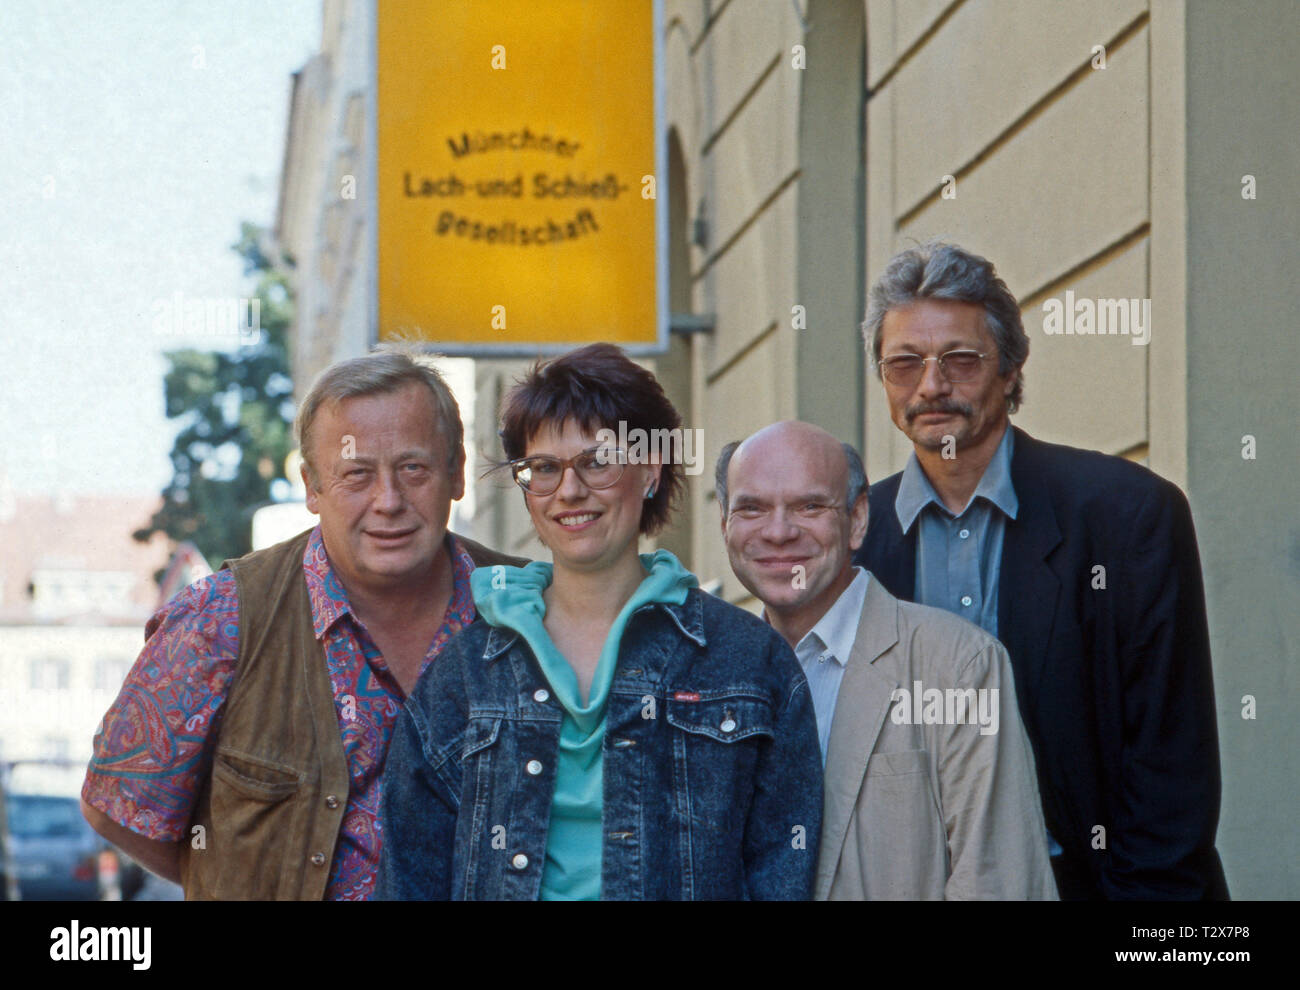 Münchner Lach- und Schießgesellschaft 1990, Besetzung: Rainer Basedow, Gabi Lodermeier, Hans Jürgen Silberbaum, Henning Venske Foto Stock